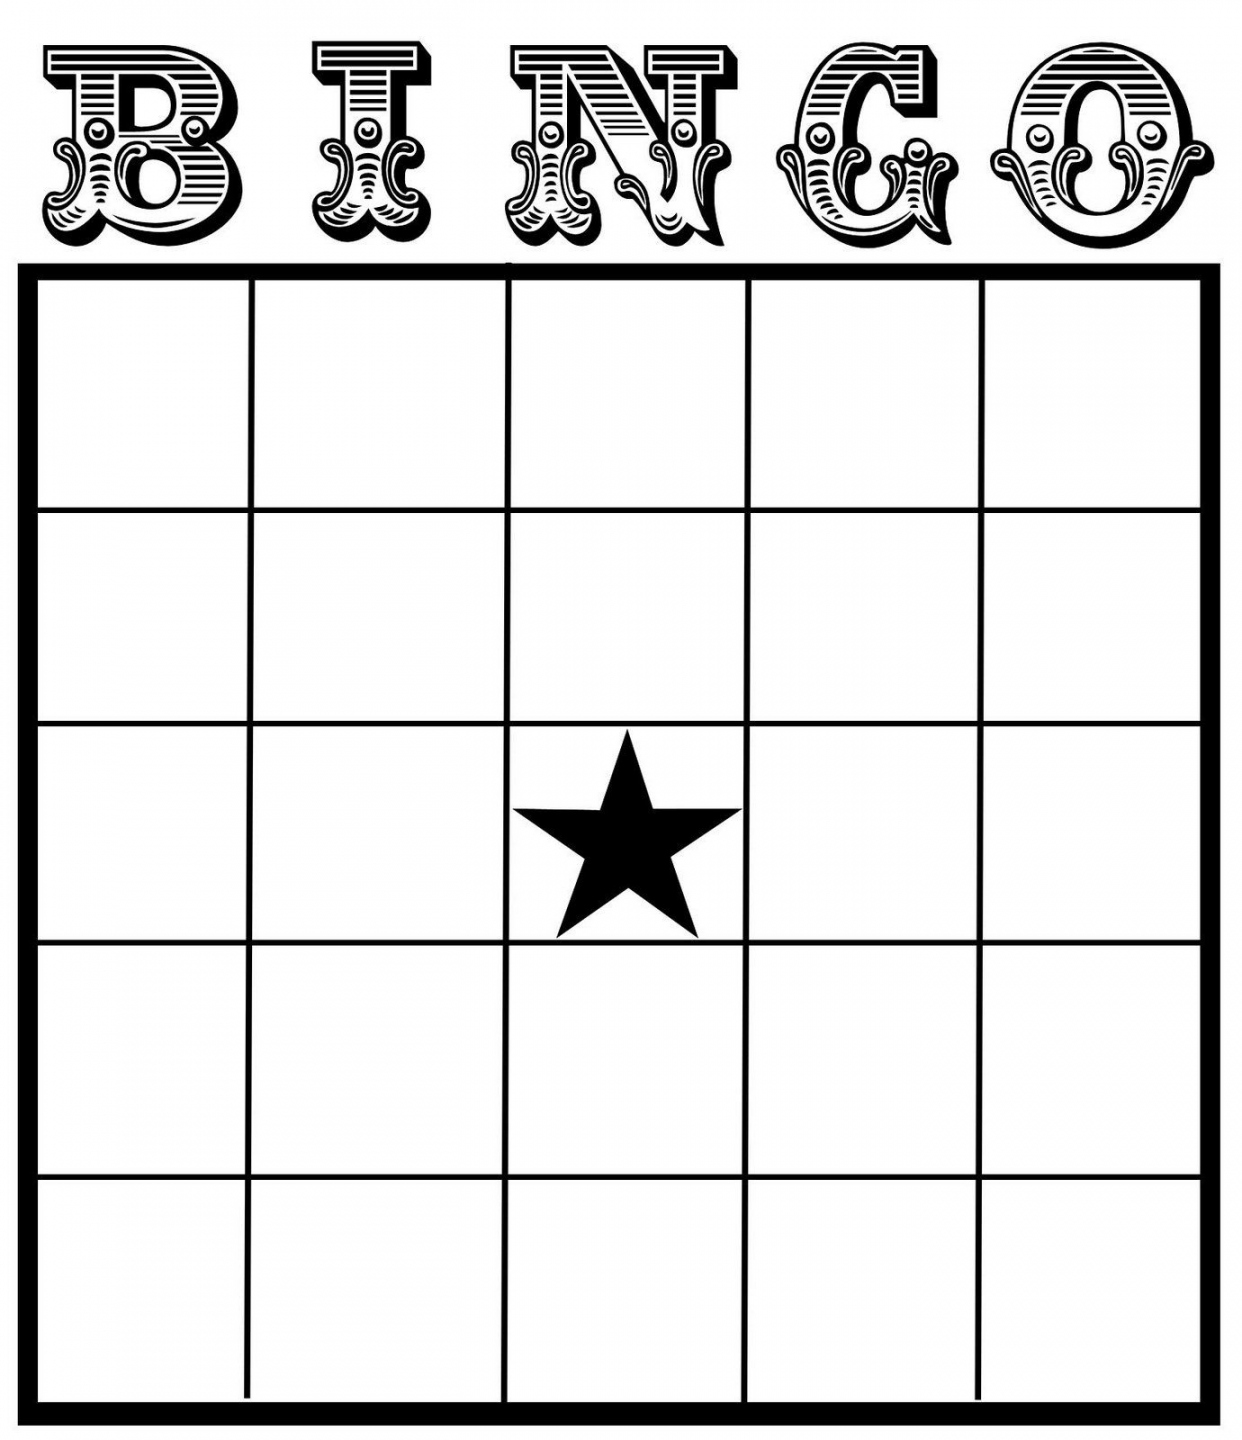 Printable Blank Bingo Cards Template  Bingo card template, Bingo  - FREE Printables - Free Printable Blank Bingo Card